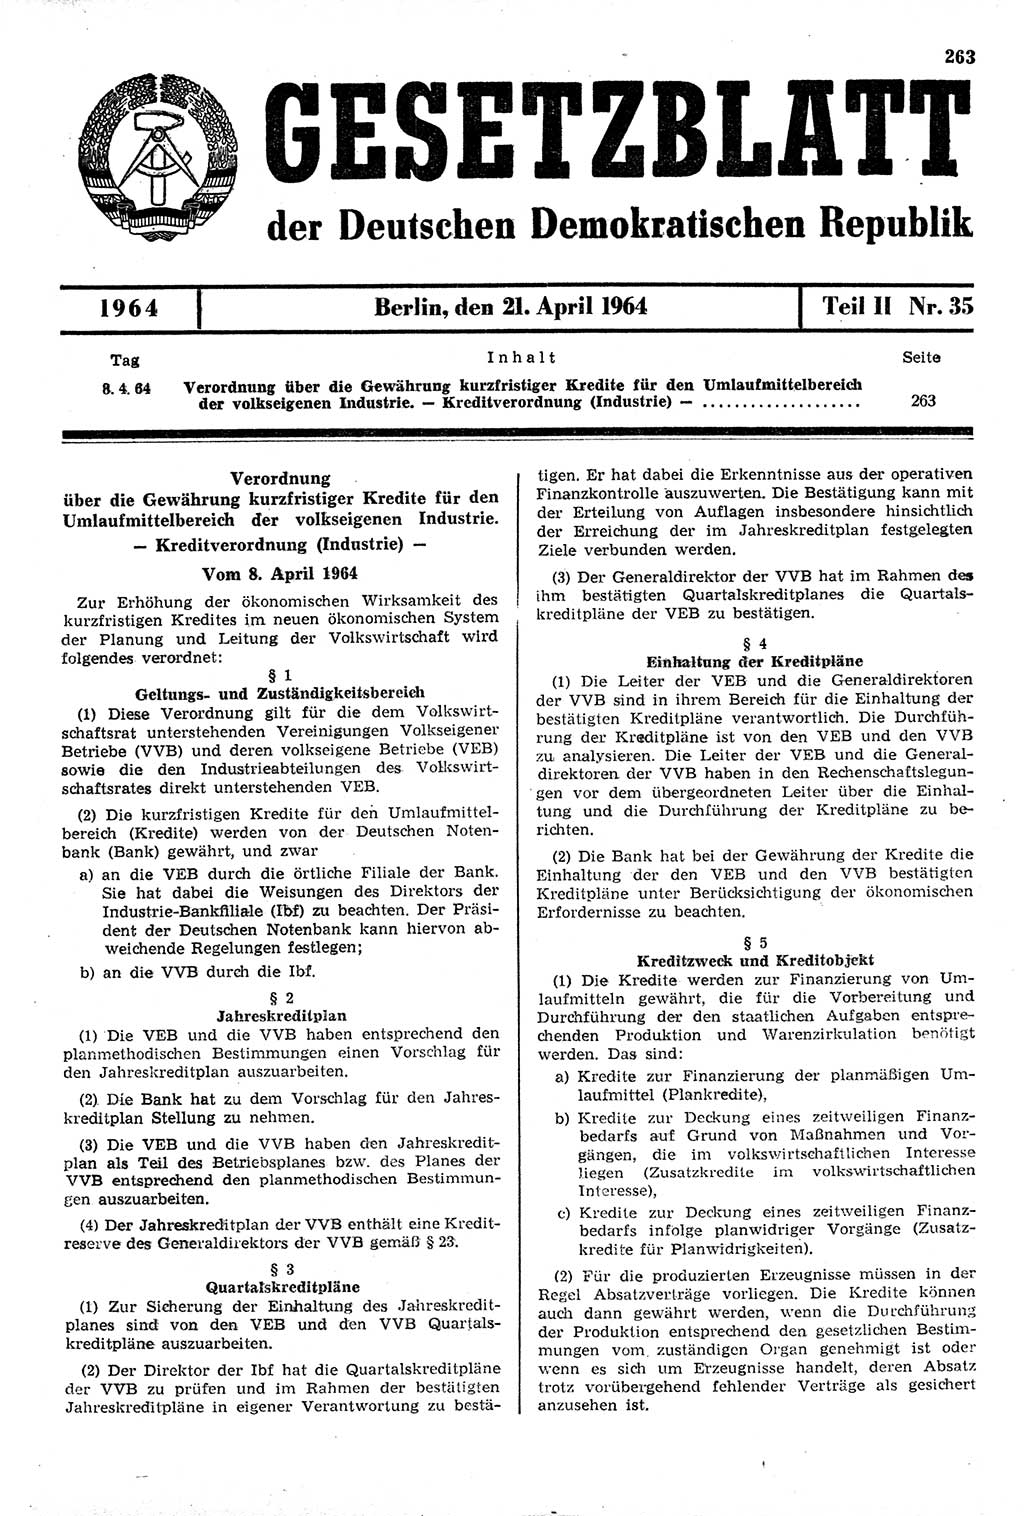 Gesetzblatt (GBl.) der Deutschen Demokratischen Republik (DDR) Teil ⅠⅠ 1964, Seite 263 (GBl. DDR ⅠⅠ 1964, S. 263)